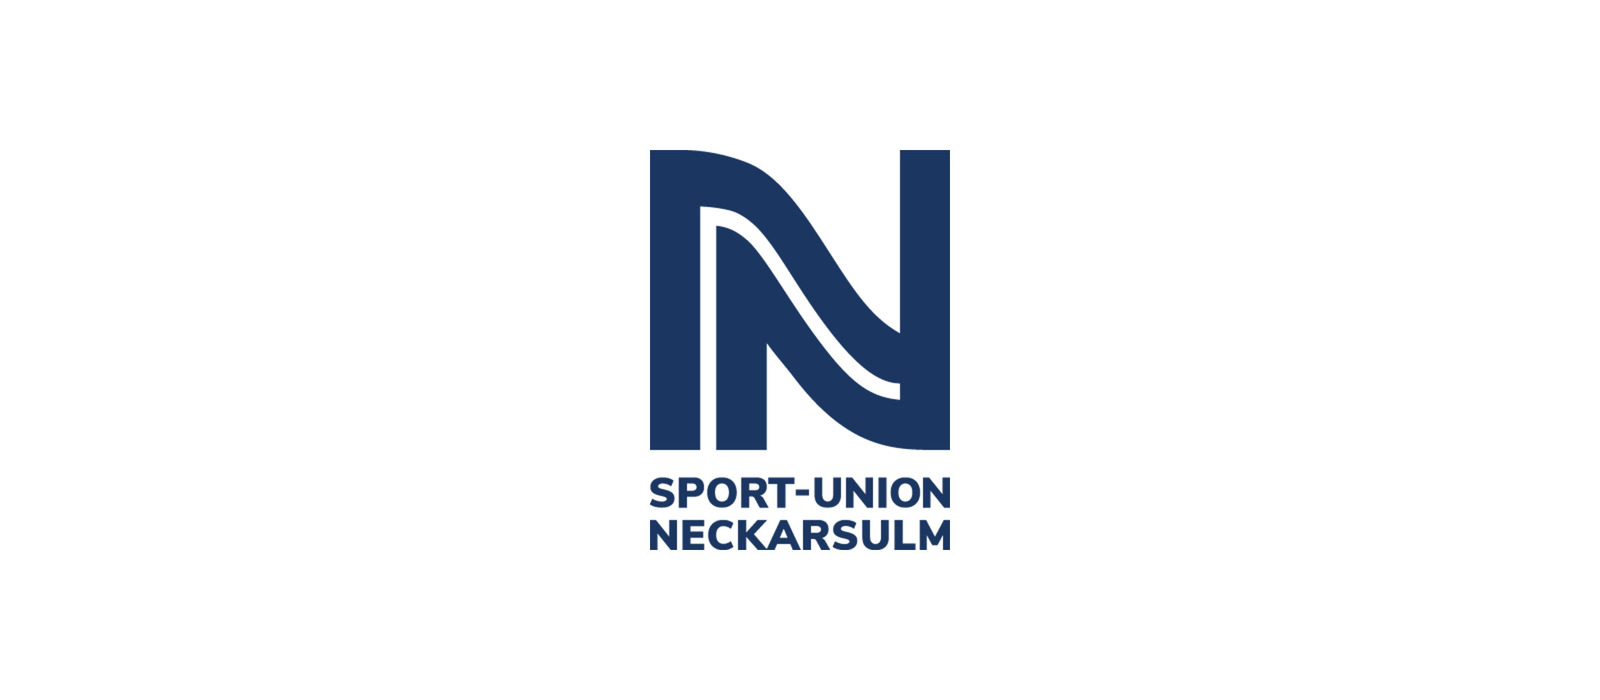 Sport-Union Neckarsulm vs VfL Waiblingen